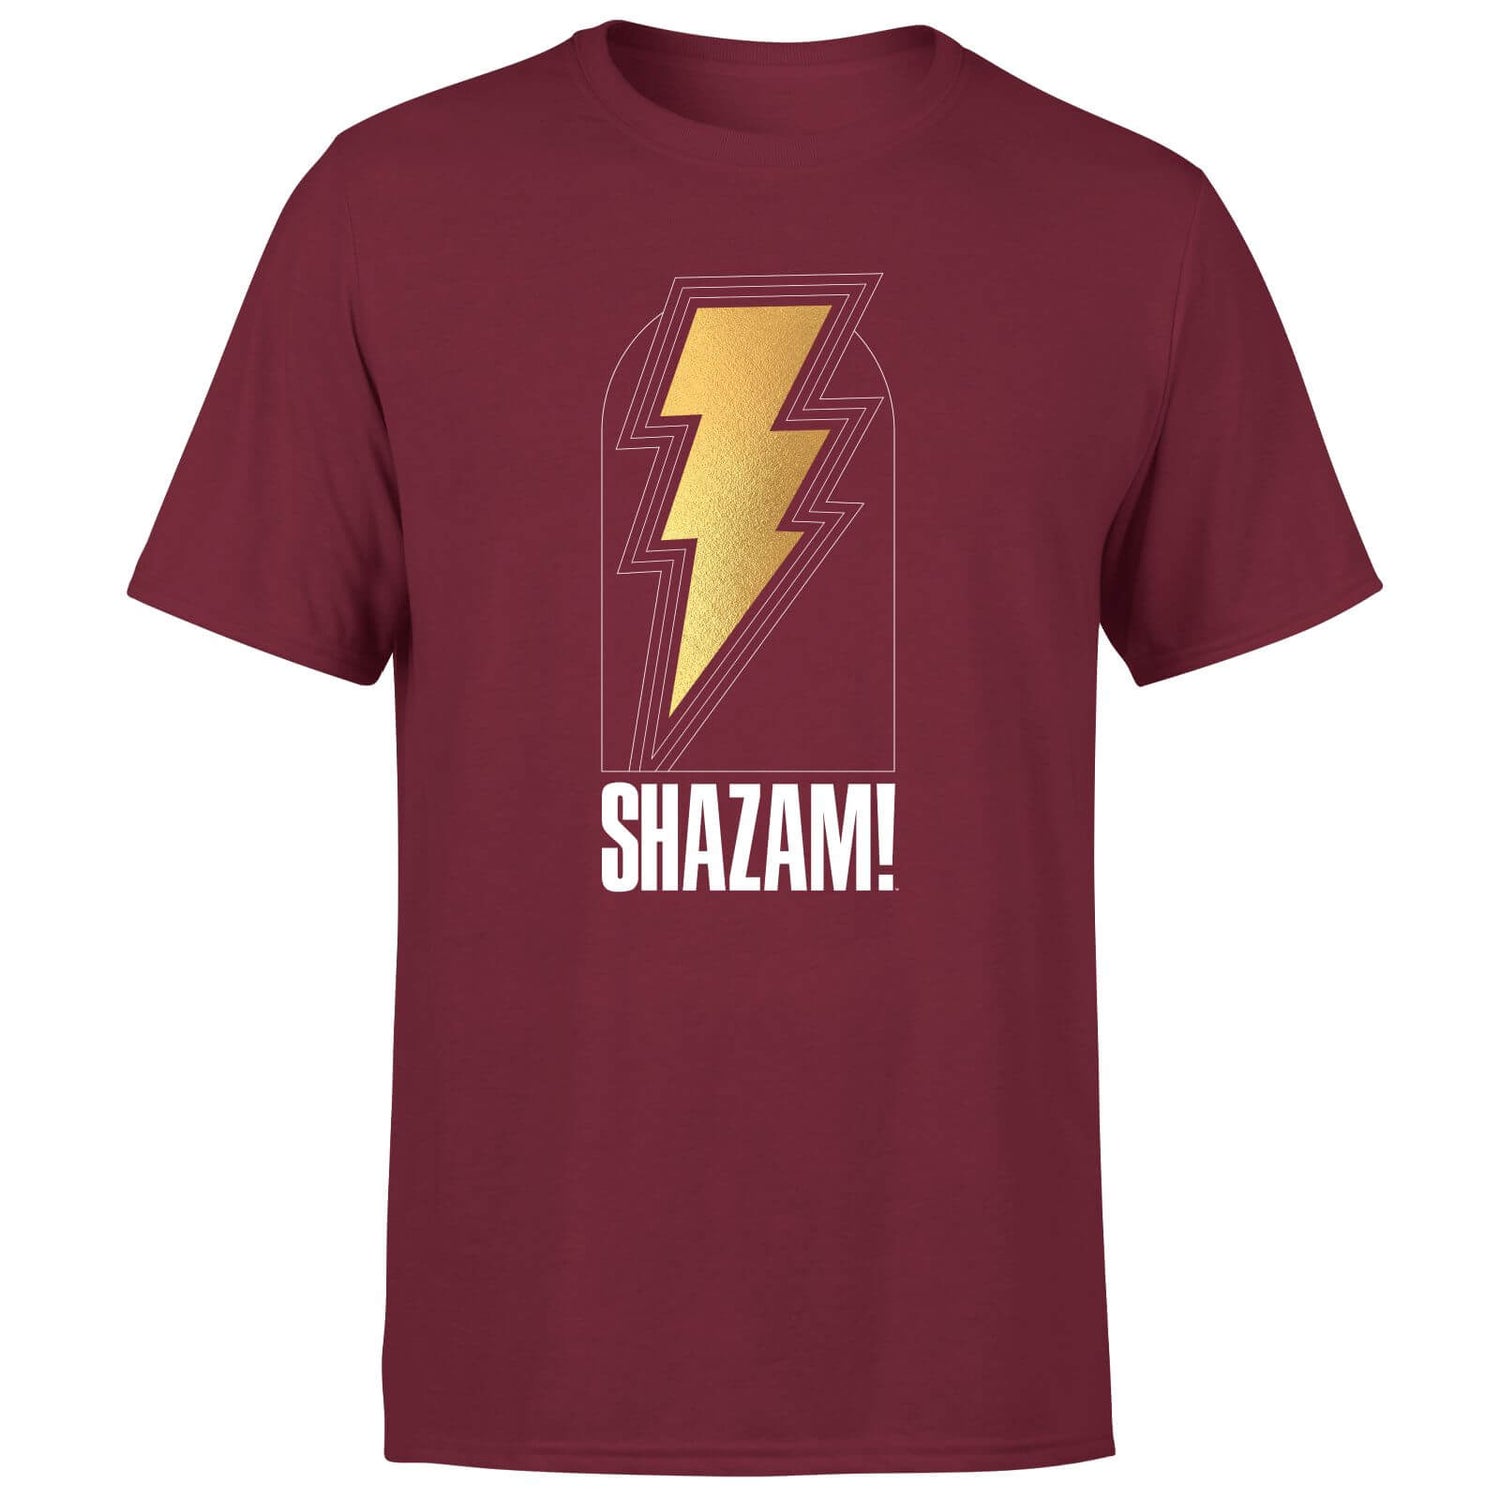 Shazam! Fury of the Gods Bolt Unisex T-Shirt - Burgundy